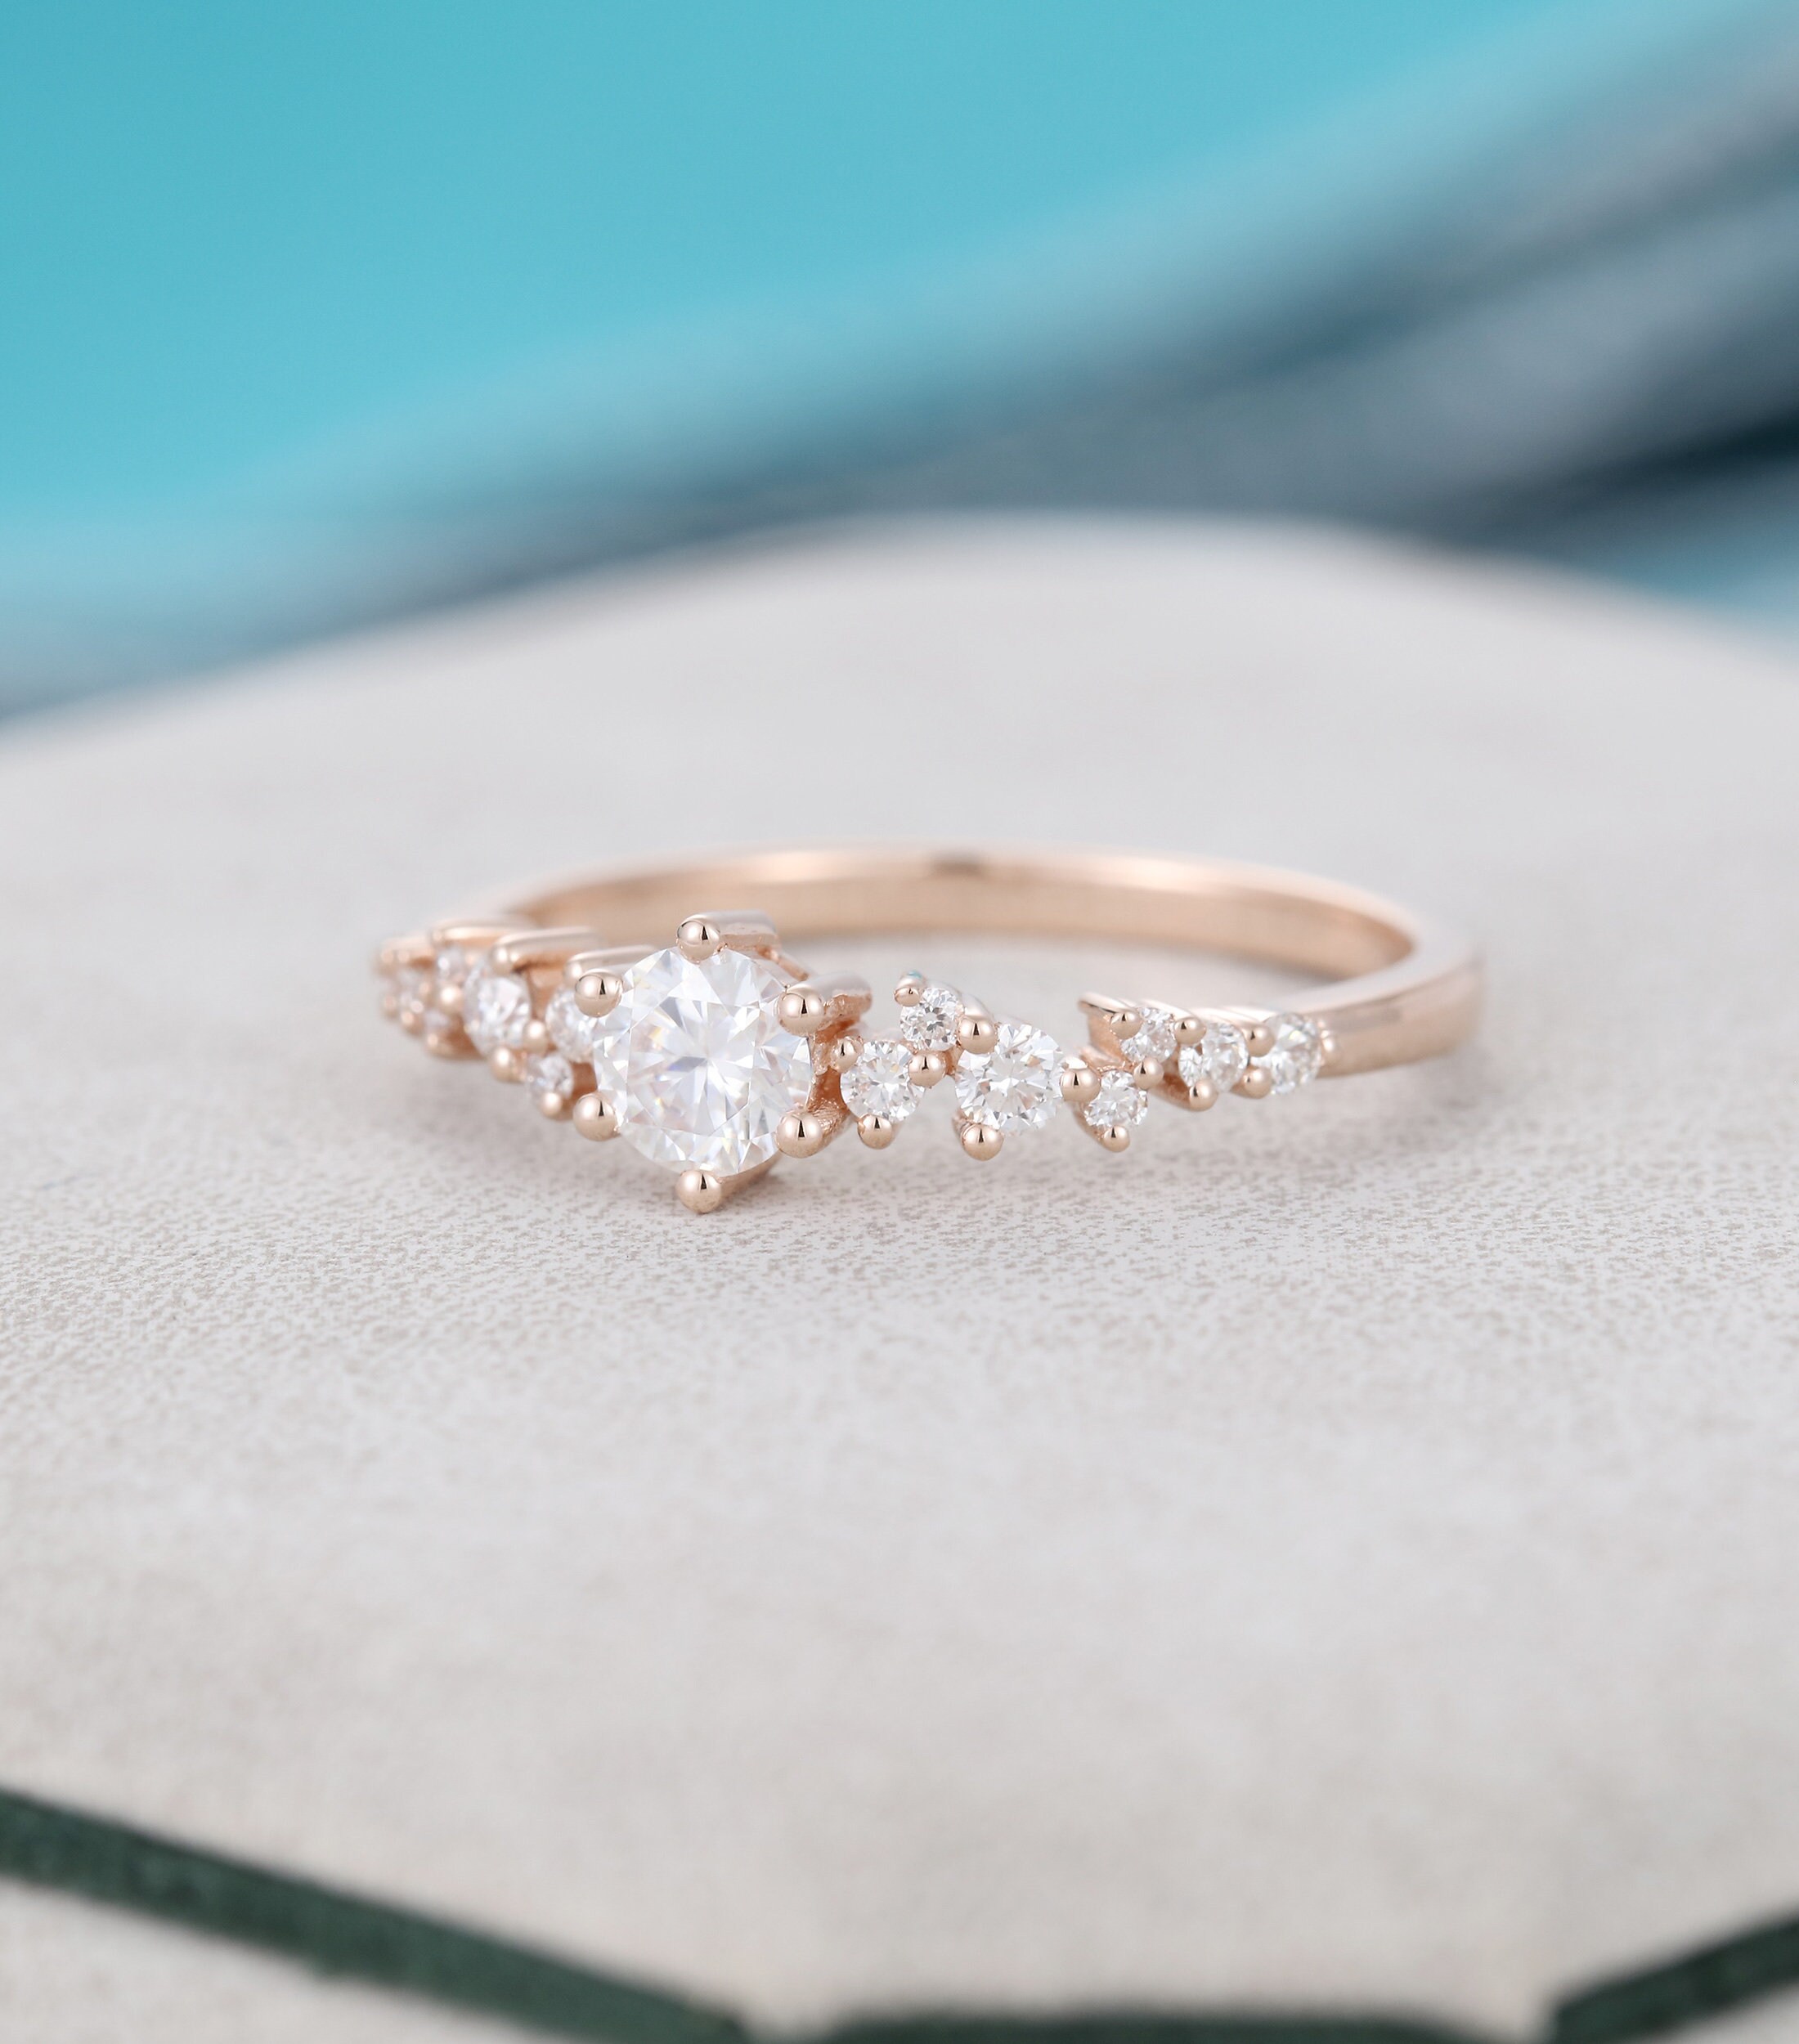 Moissanite engagement ring vintage 14k rose gold diamond | Etsy